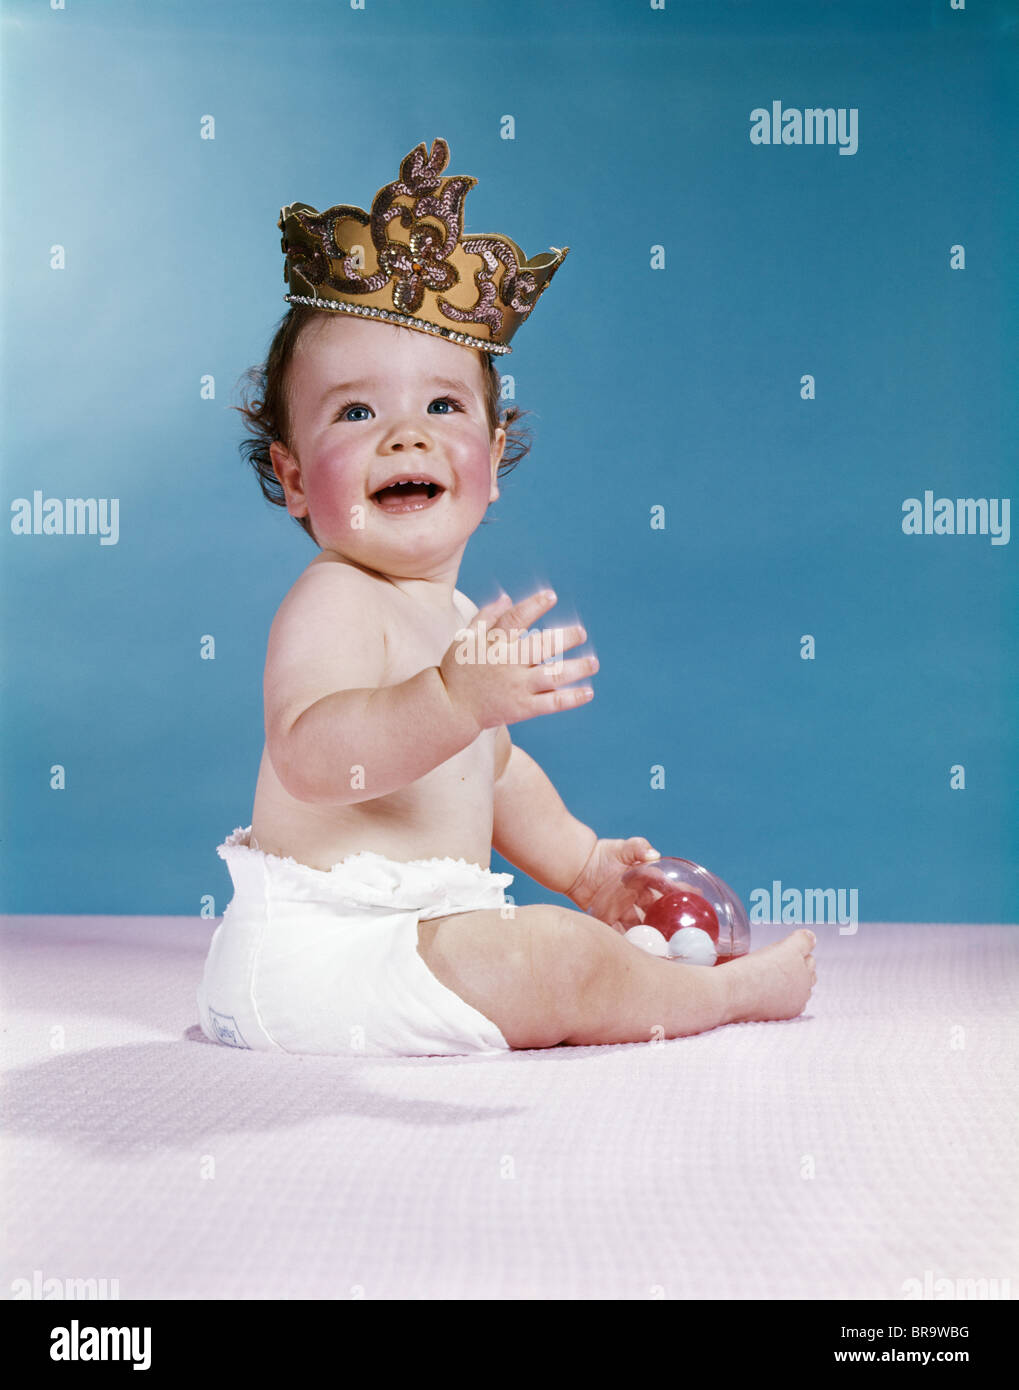 Corona bambino immagini e fotografie stock ad alta risoluzione - Alamy